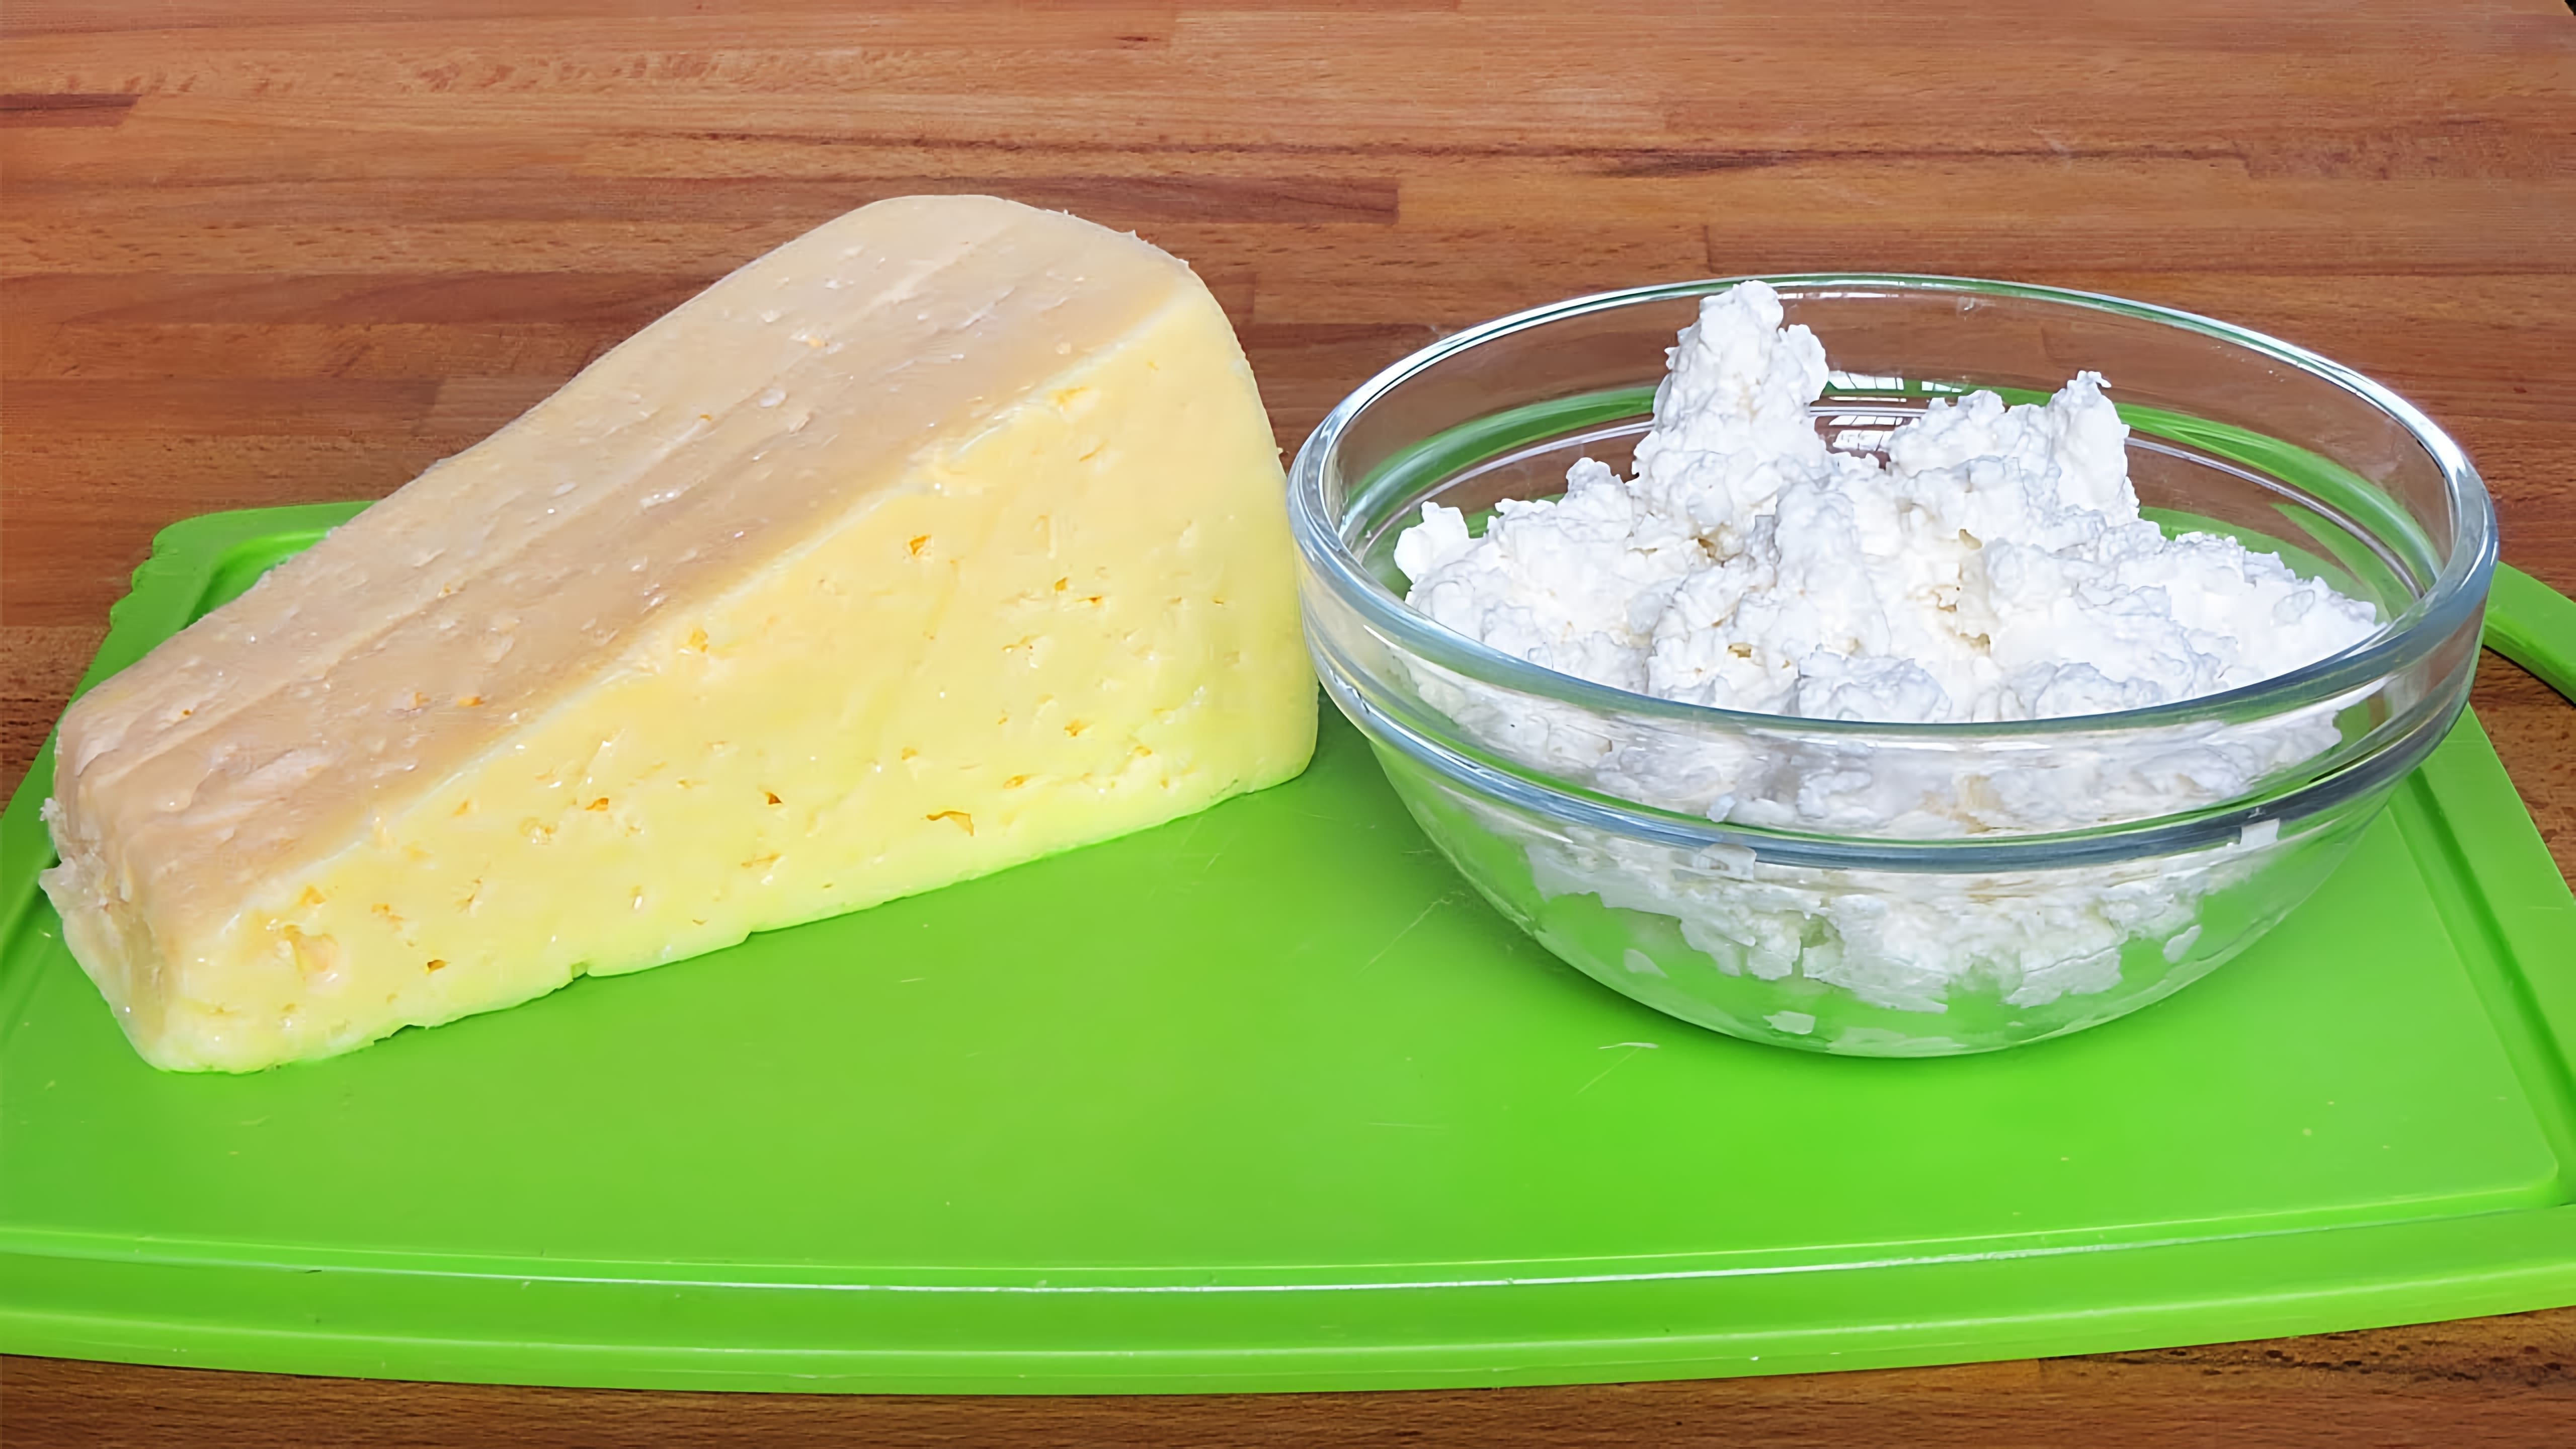 В этом видео демонстрируется рецепт приготовления сыра на основе творога